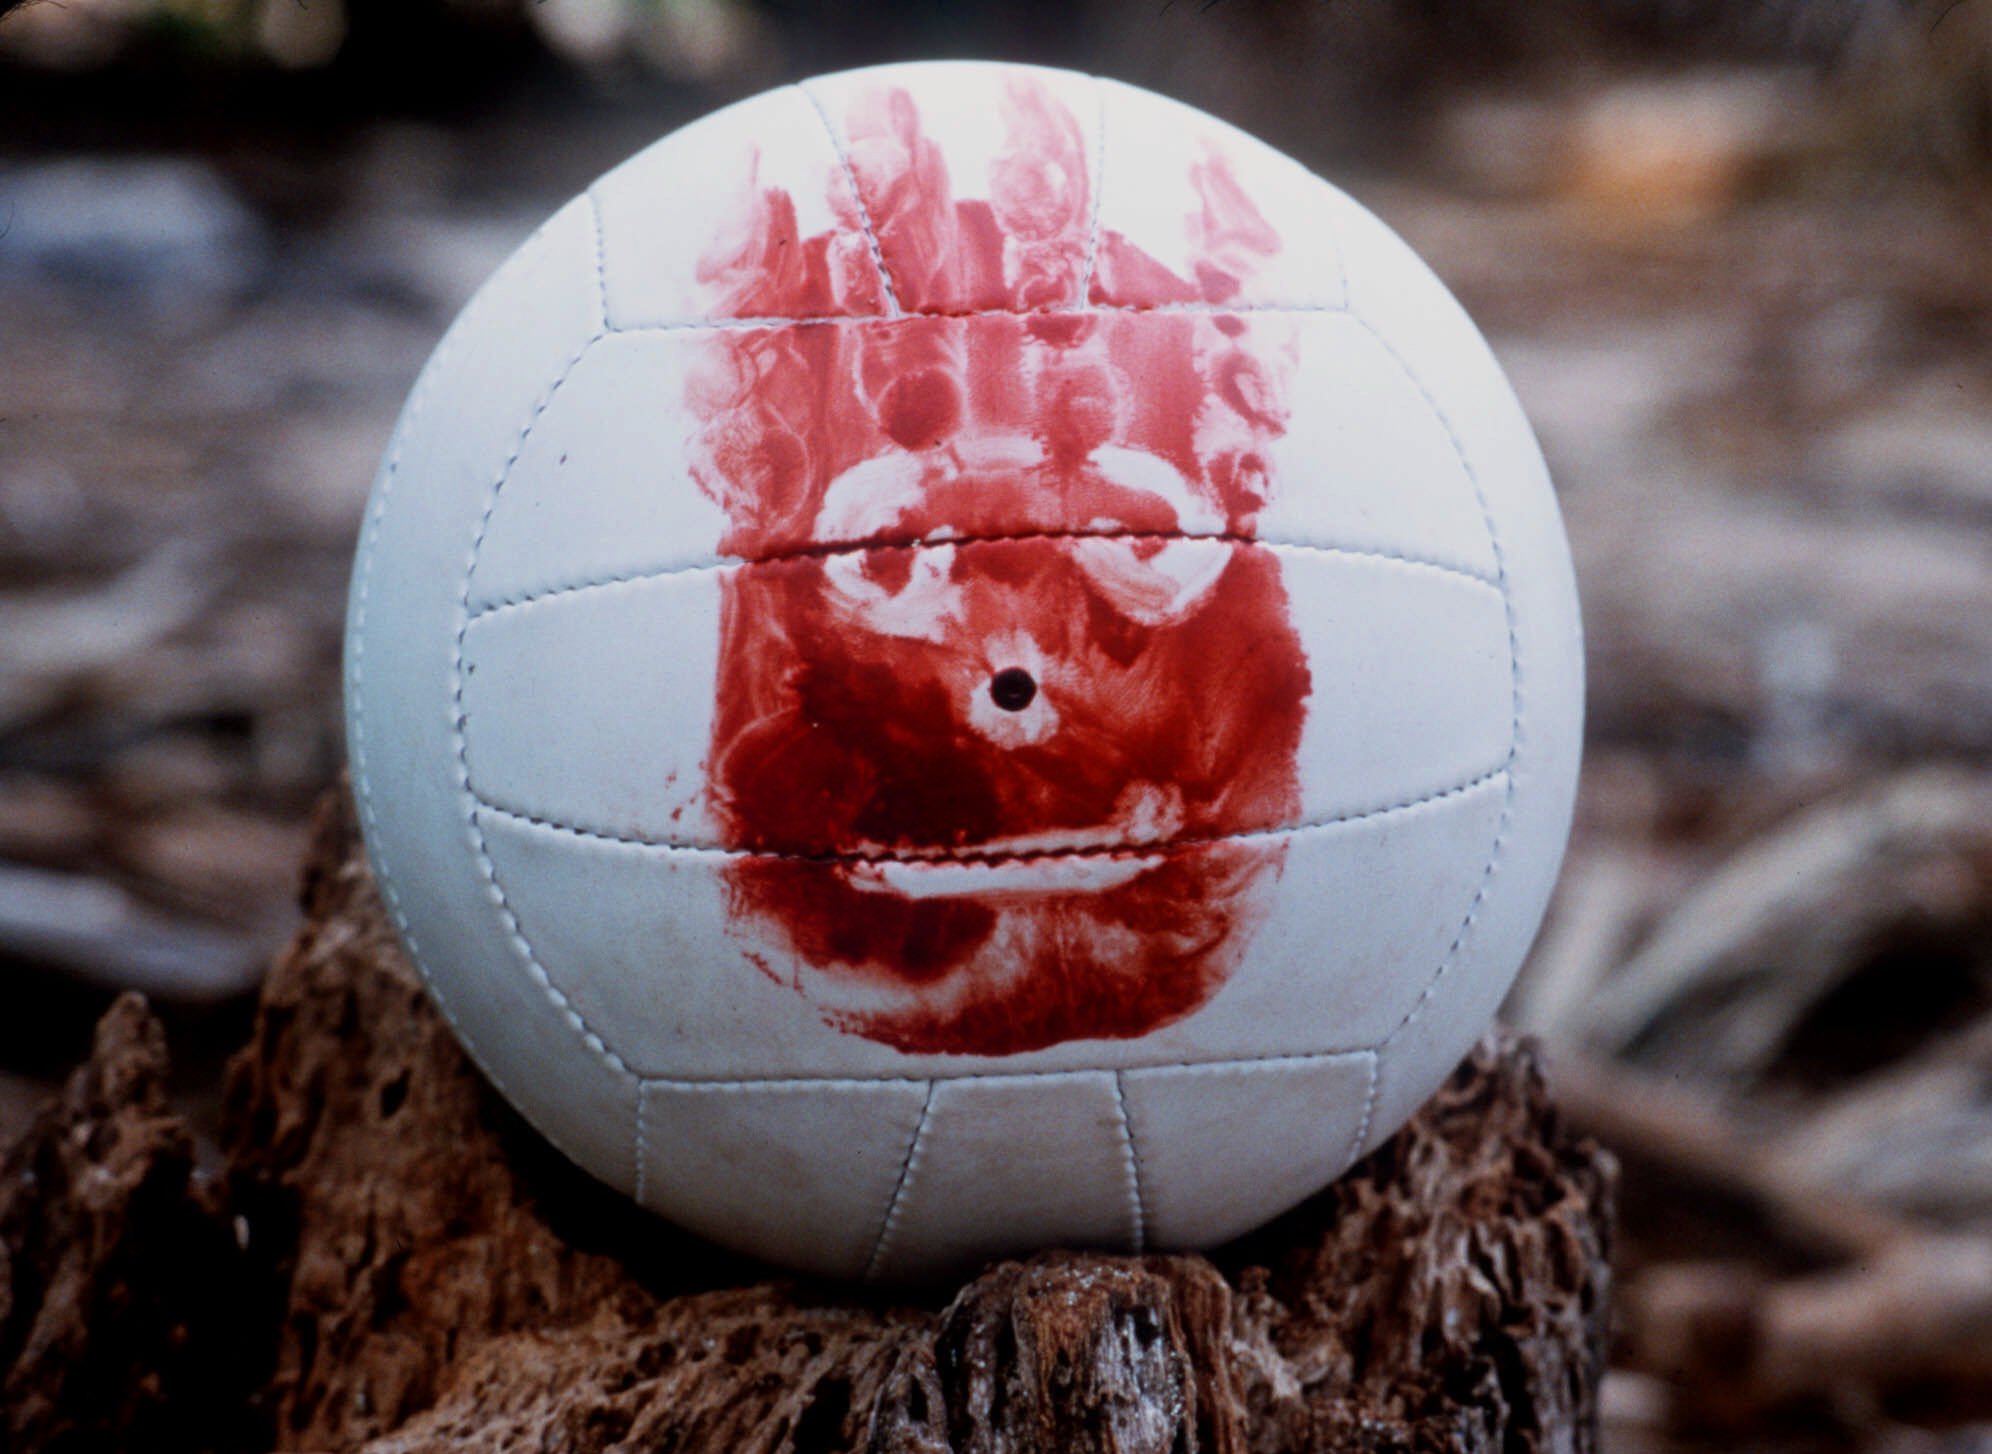 cast-away-wilson-volleyball1.jpg